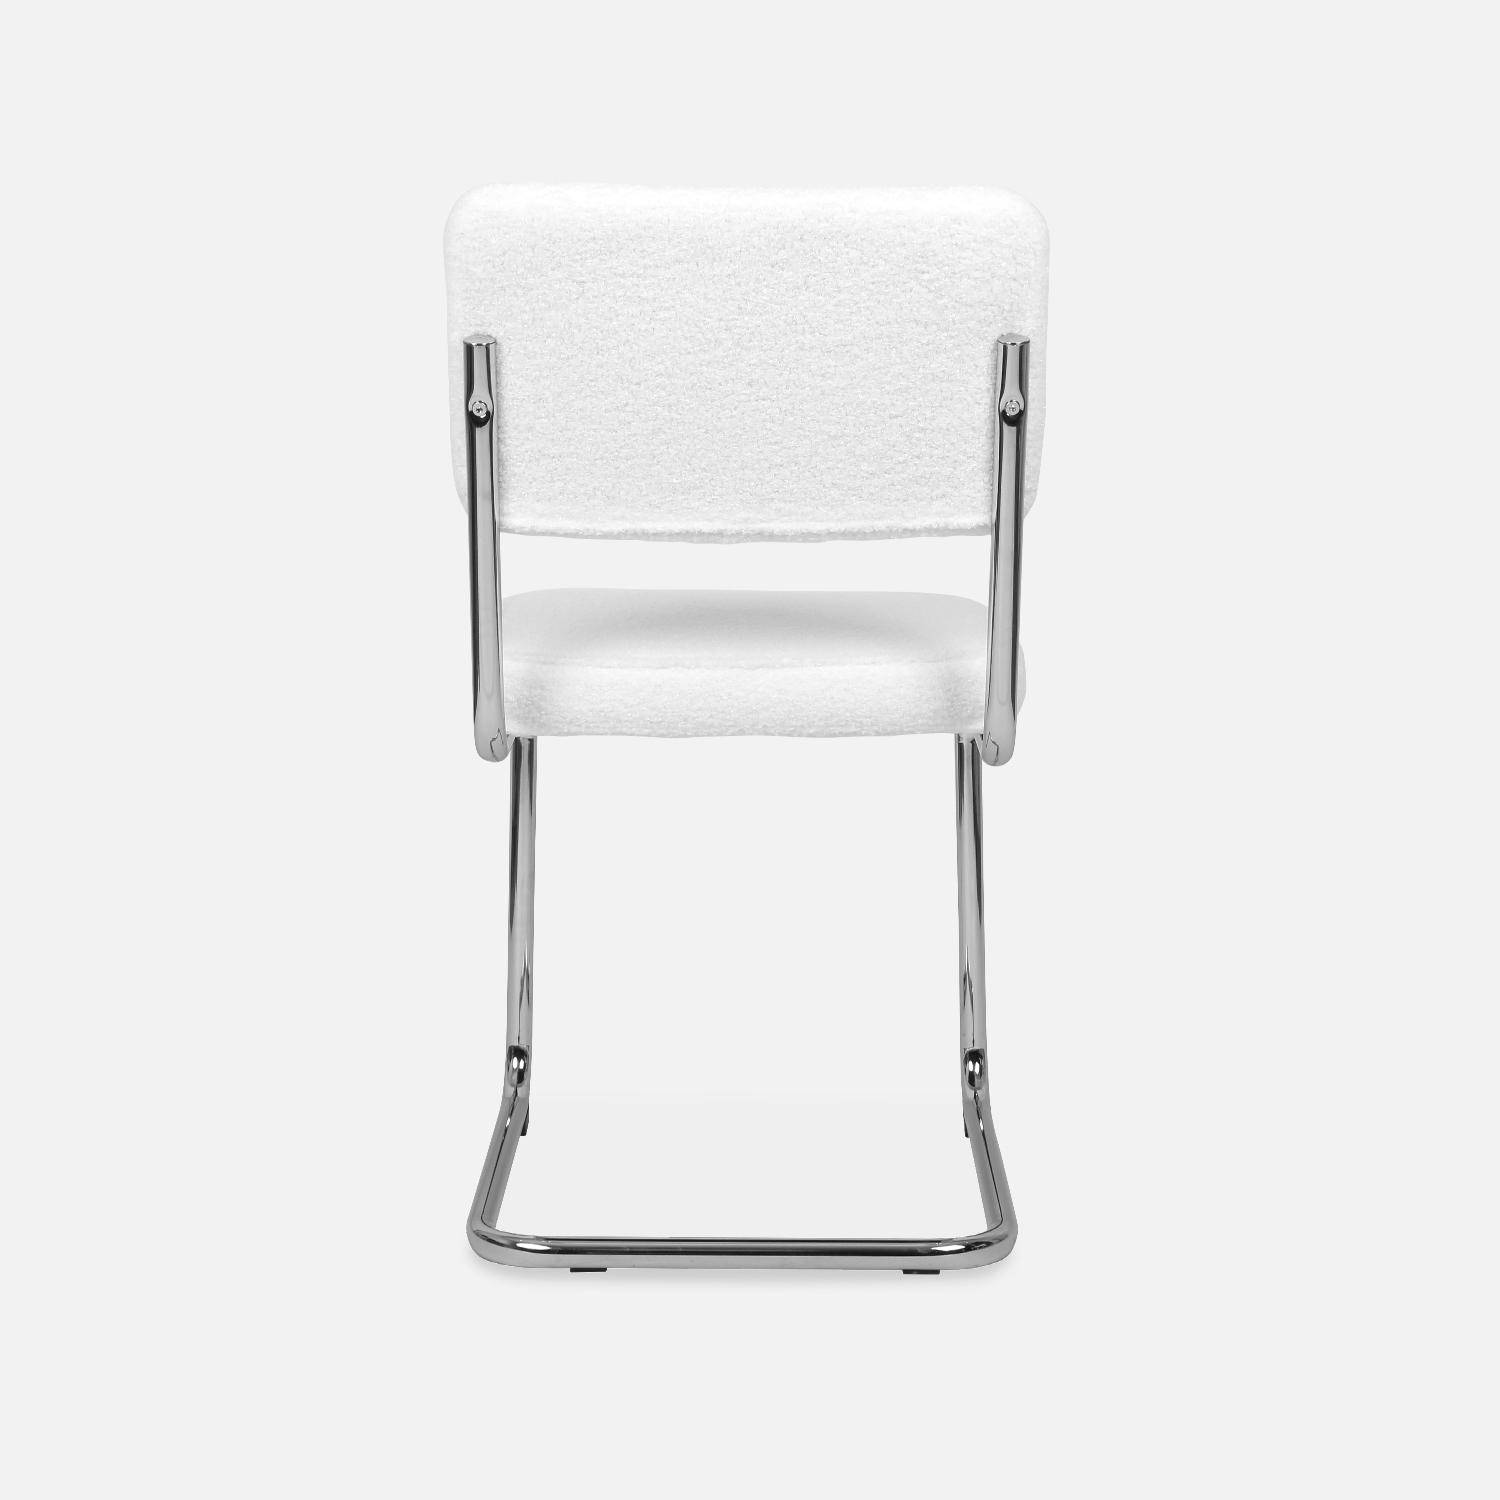 2 sillas voladizas - Maja - con rizos blancos, 46 x 54,5 x 84,5cm  ,sweeek,Photo6